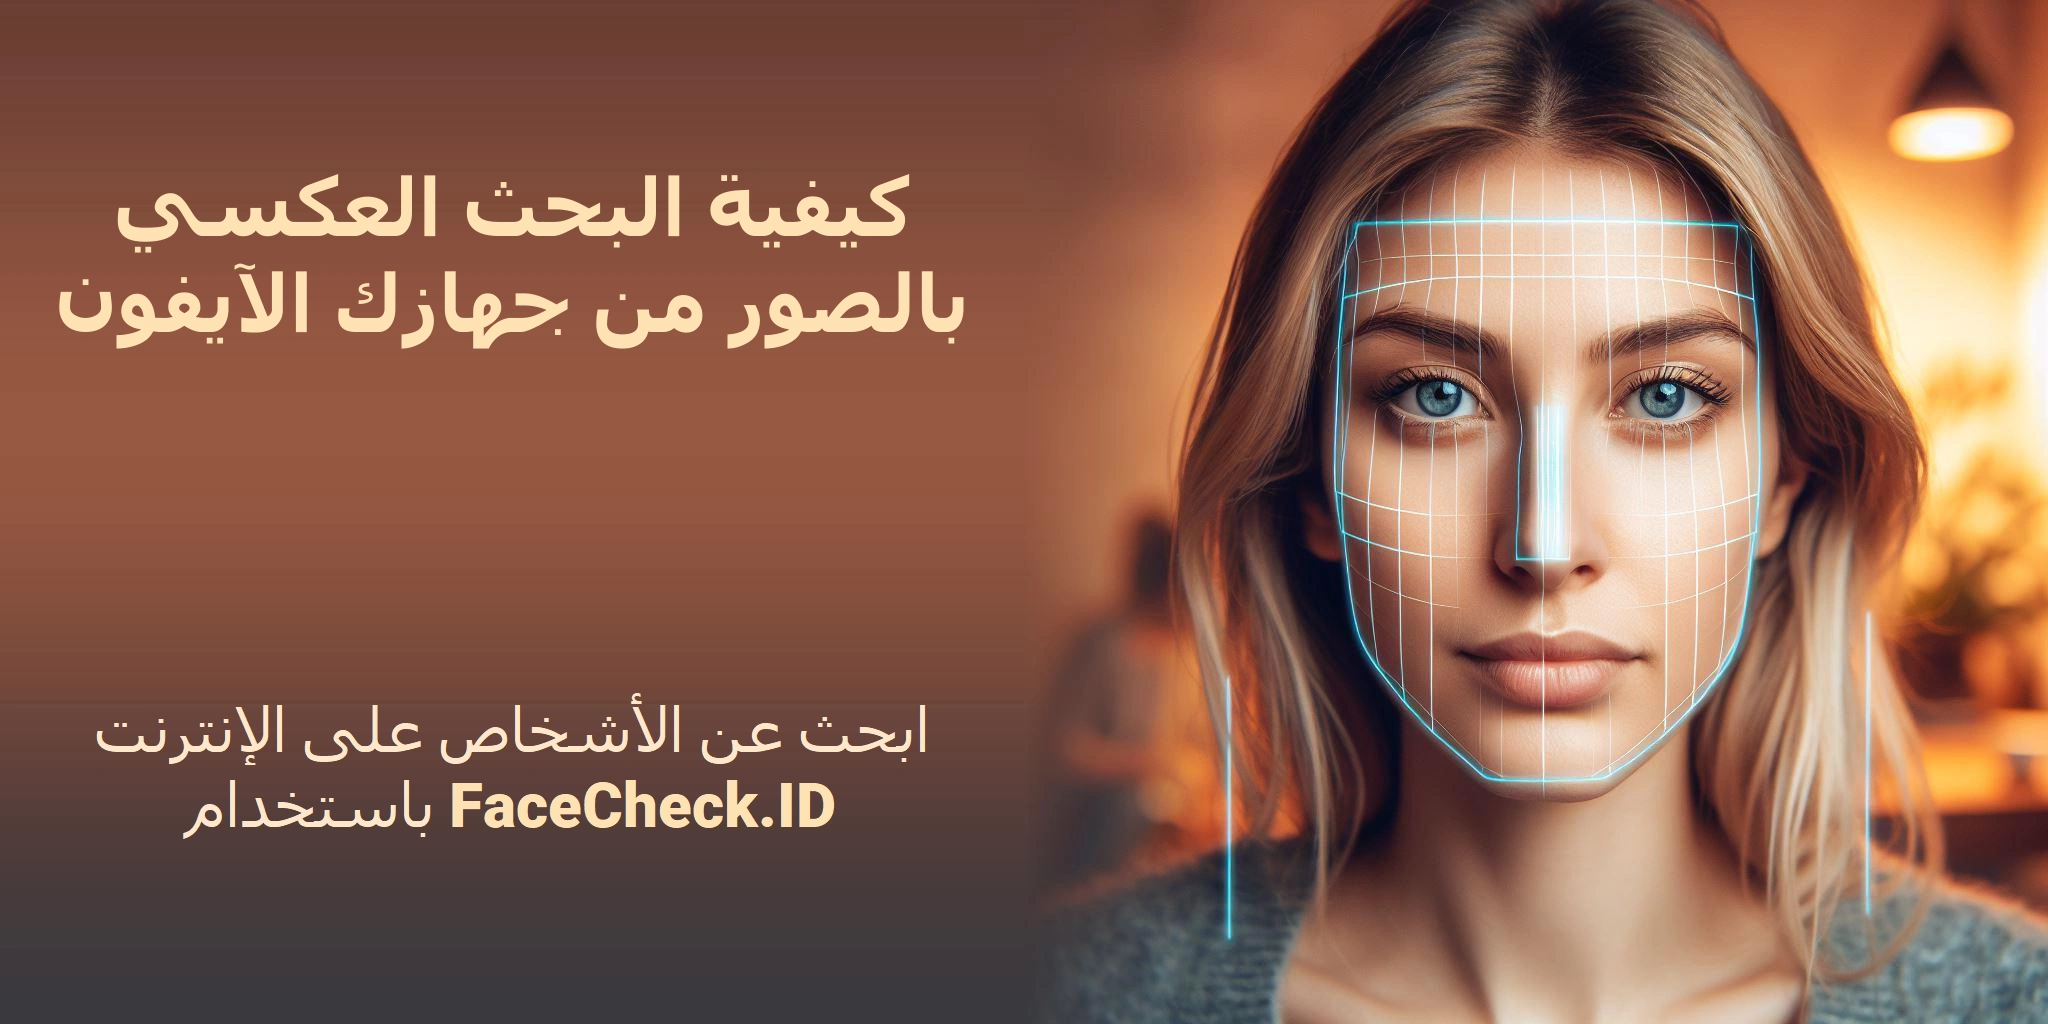 كيفية البحث العكسي بالصور من جهازك الآيفون ابحث عن الأشخاص على الإنترنت باستخدام FaceCheck.ID